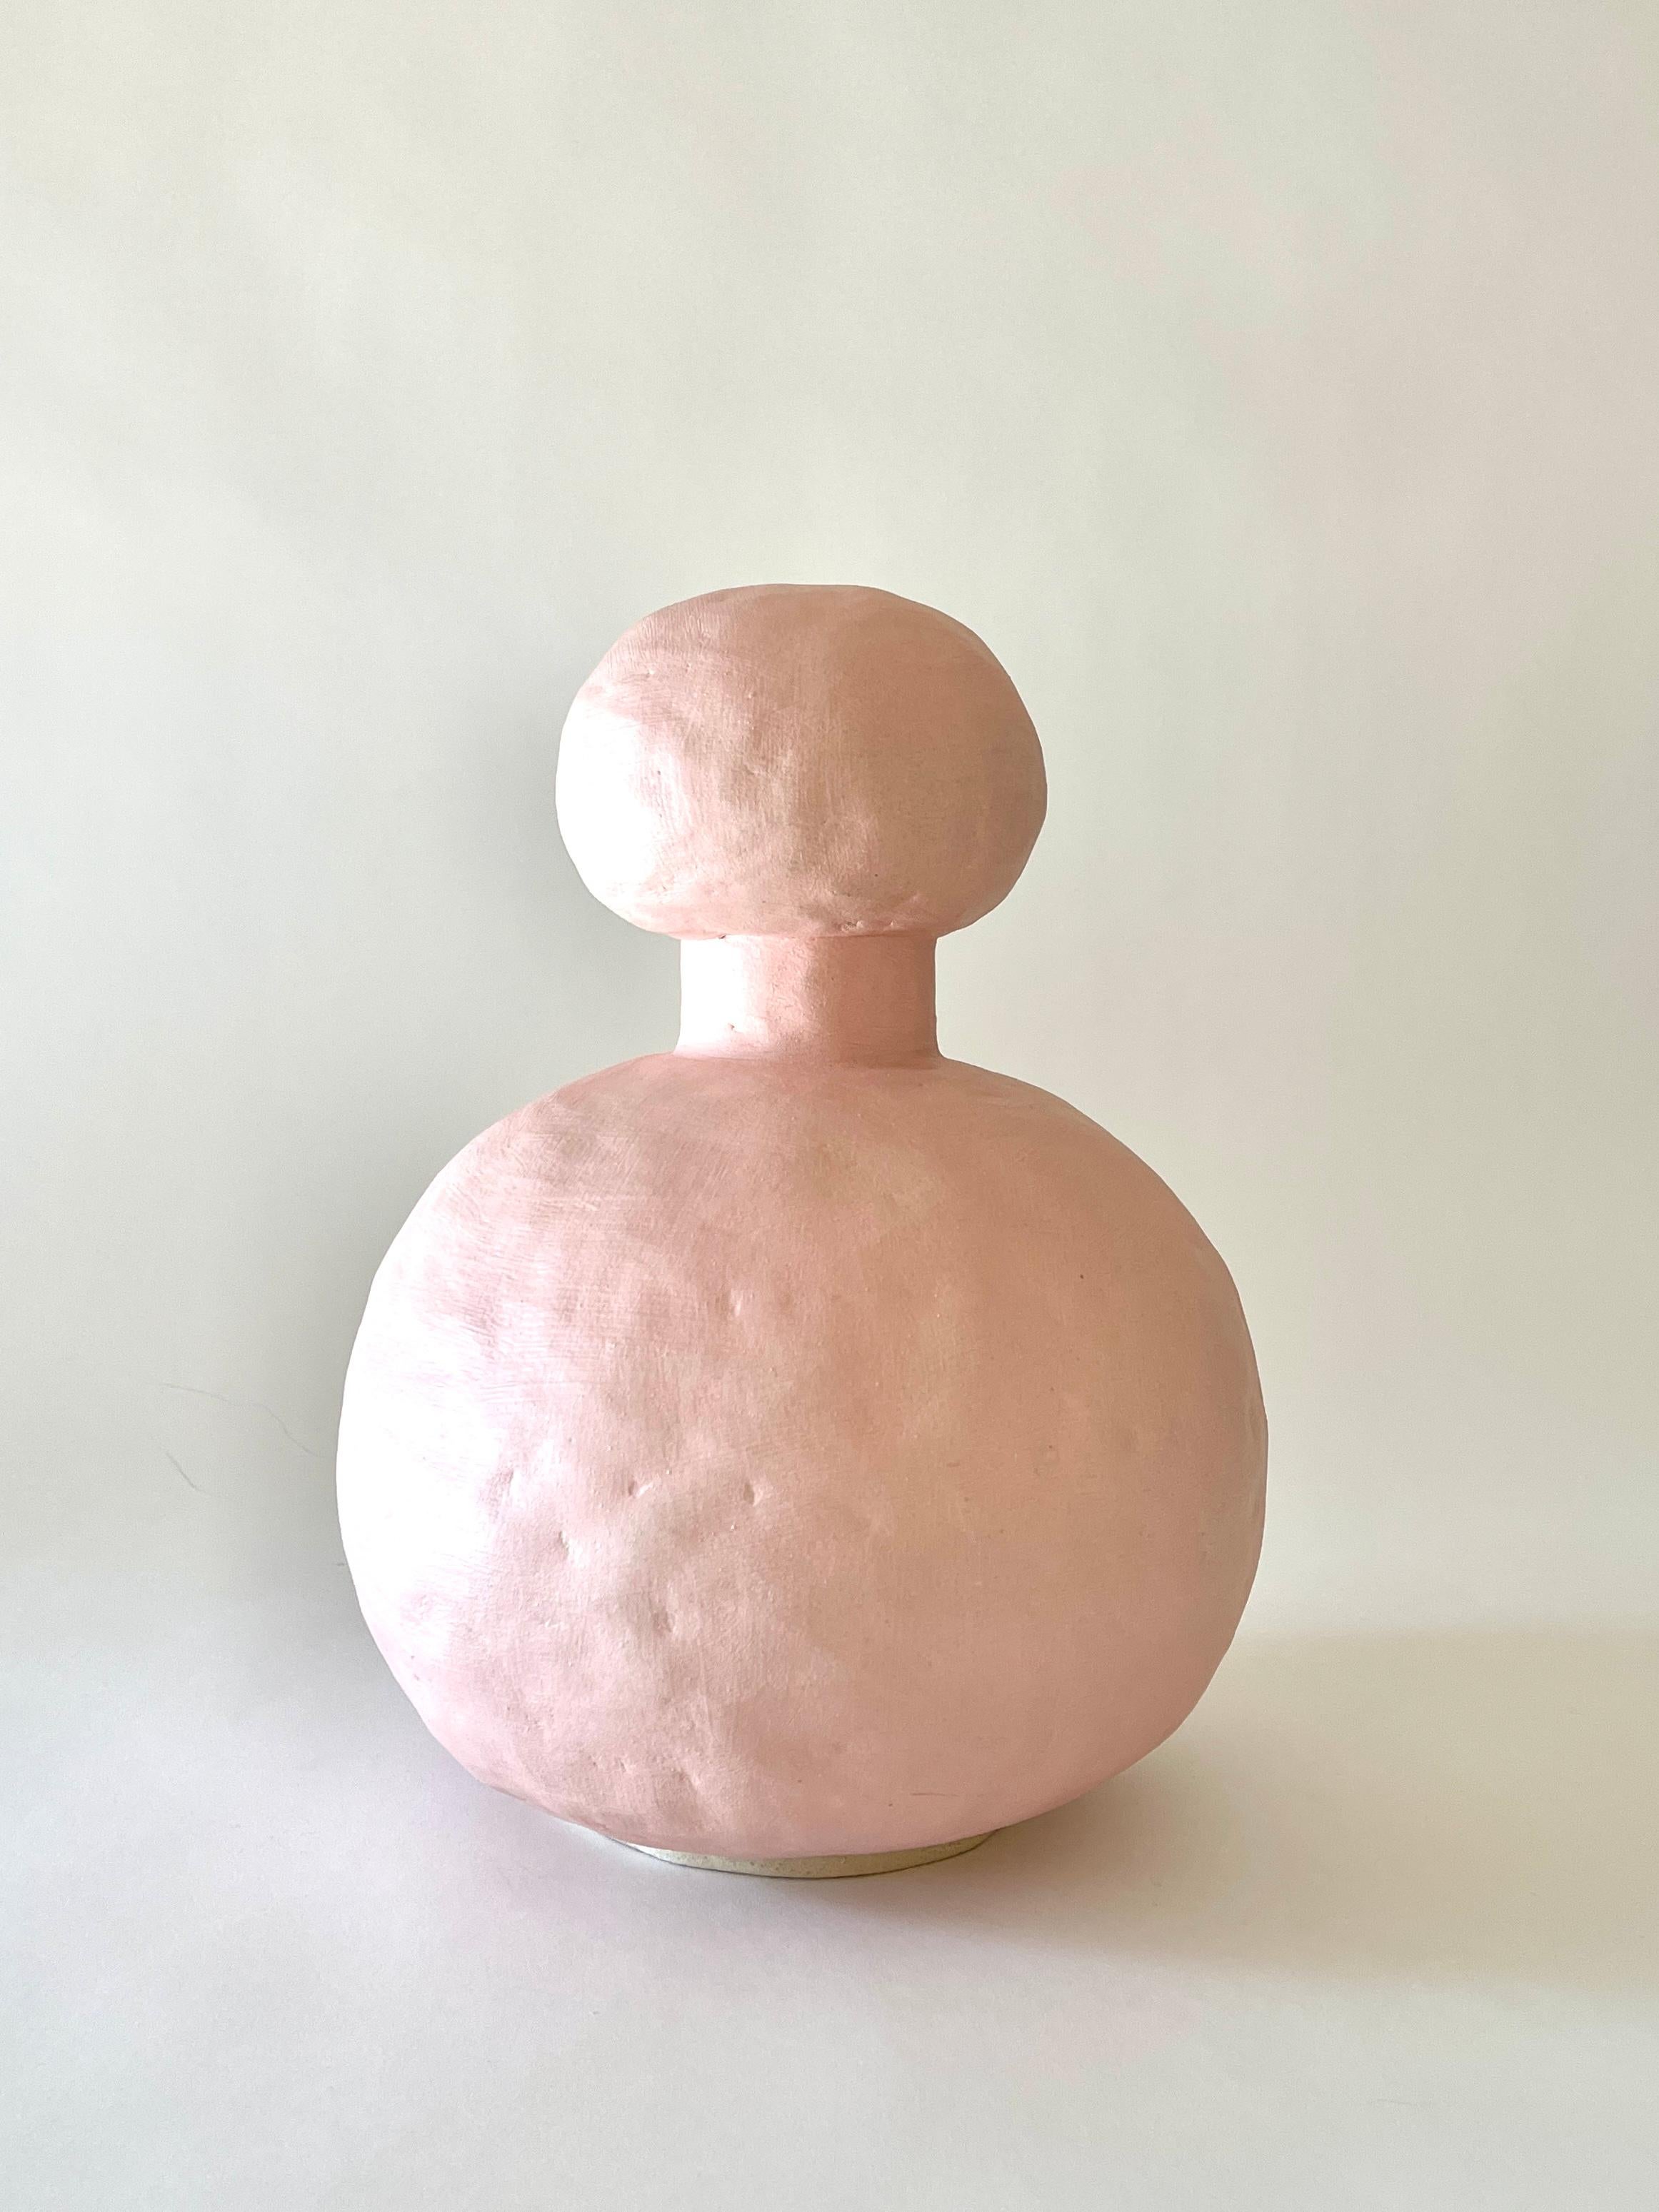 Jules Rosa Vase von Meg Morrison
MATERIALIEN: Keramisch.
Abmessungen: Ø 23 x H 32 cm.

Erhältlich in den Farben Schwarz, Weiß, Gelb und Rosa. Alle Größenangaben sind Richtwerte. Obwohl Vasen wasserdicht sind, kann sich am Boden Kondenswasser bilden.